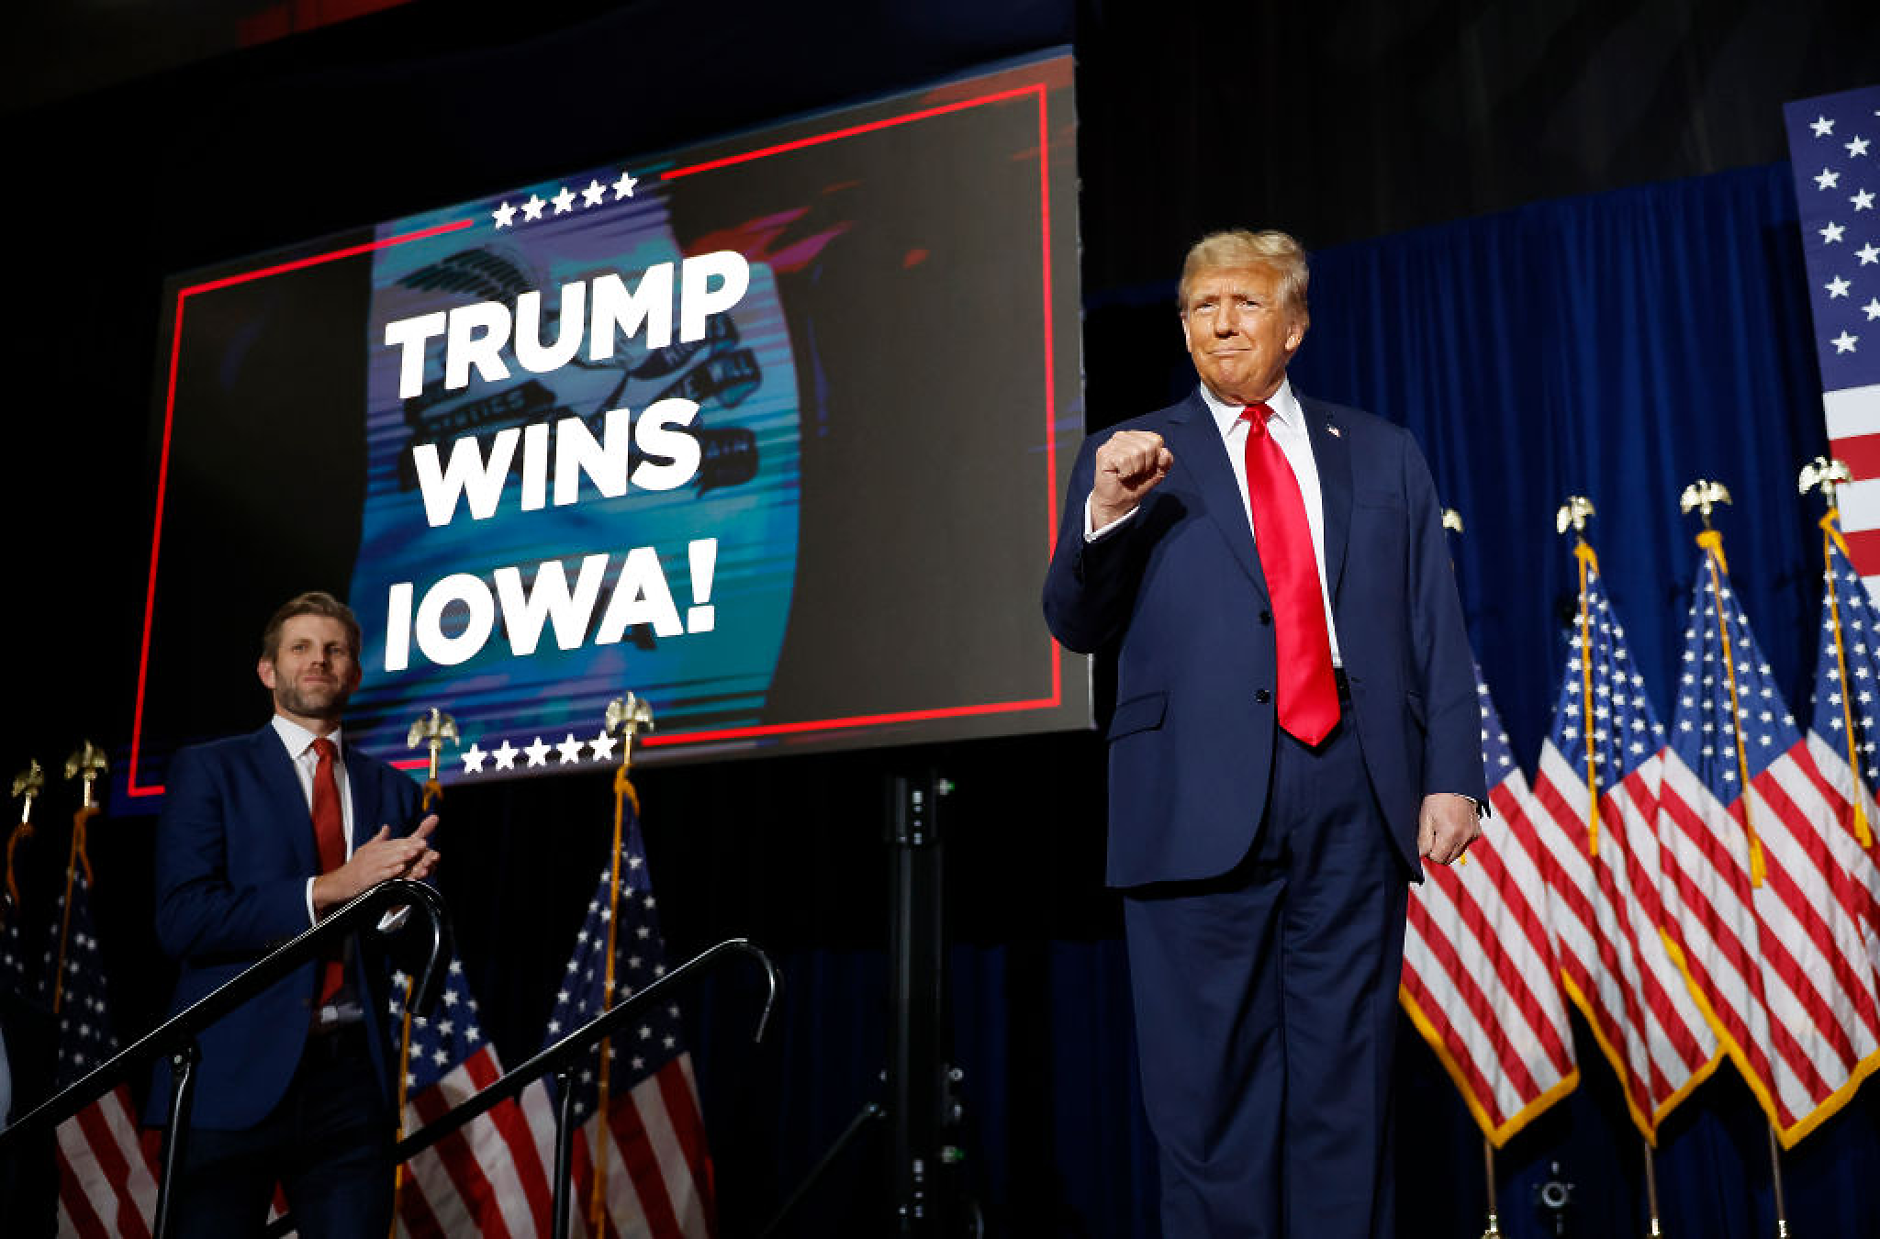 Тръмп с убедителна победа на първичните избори в Айова. Десантис и Хейли в битка за второто място